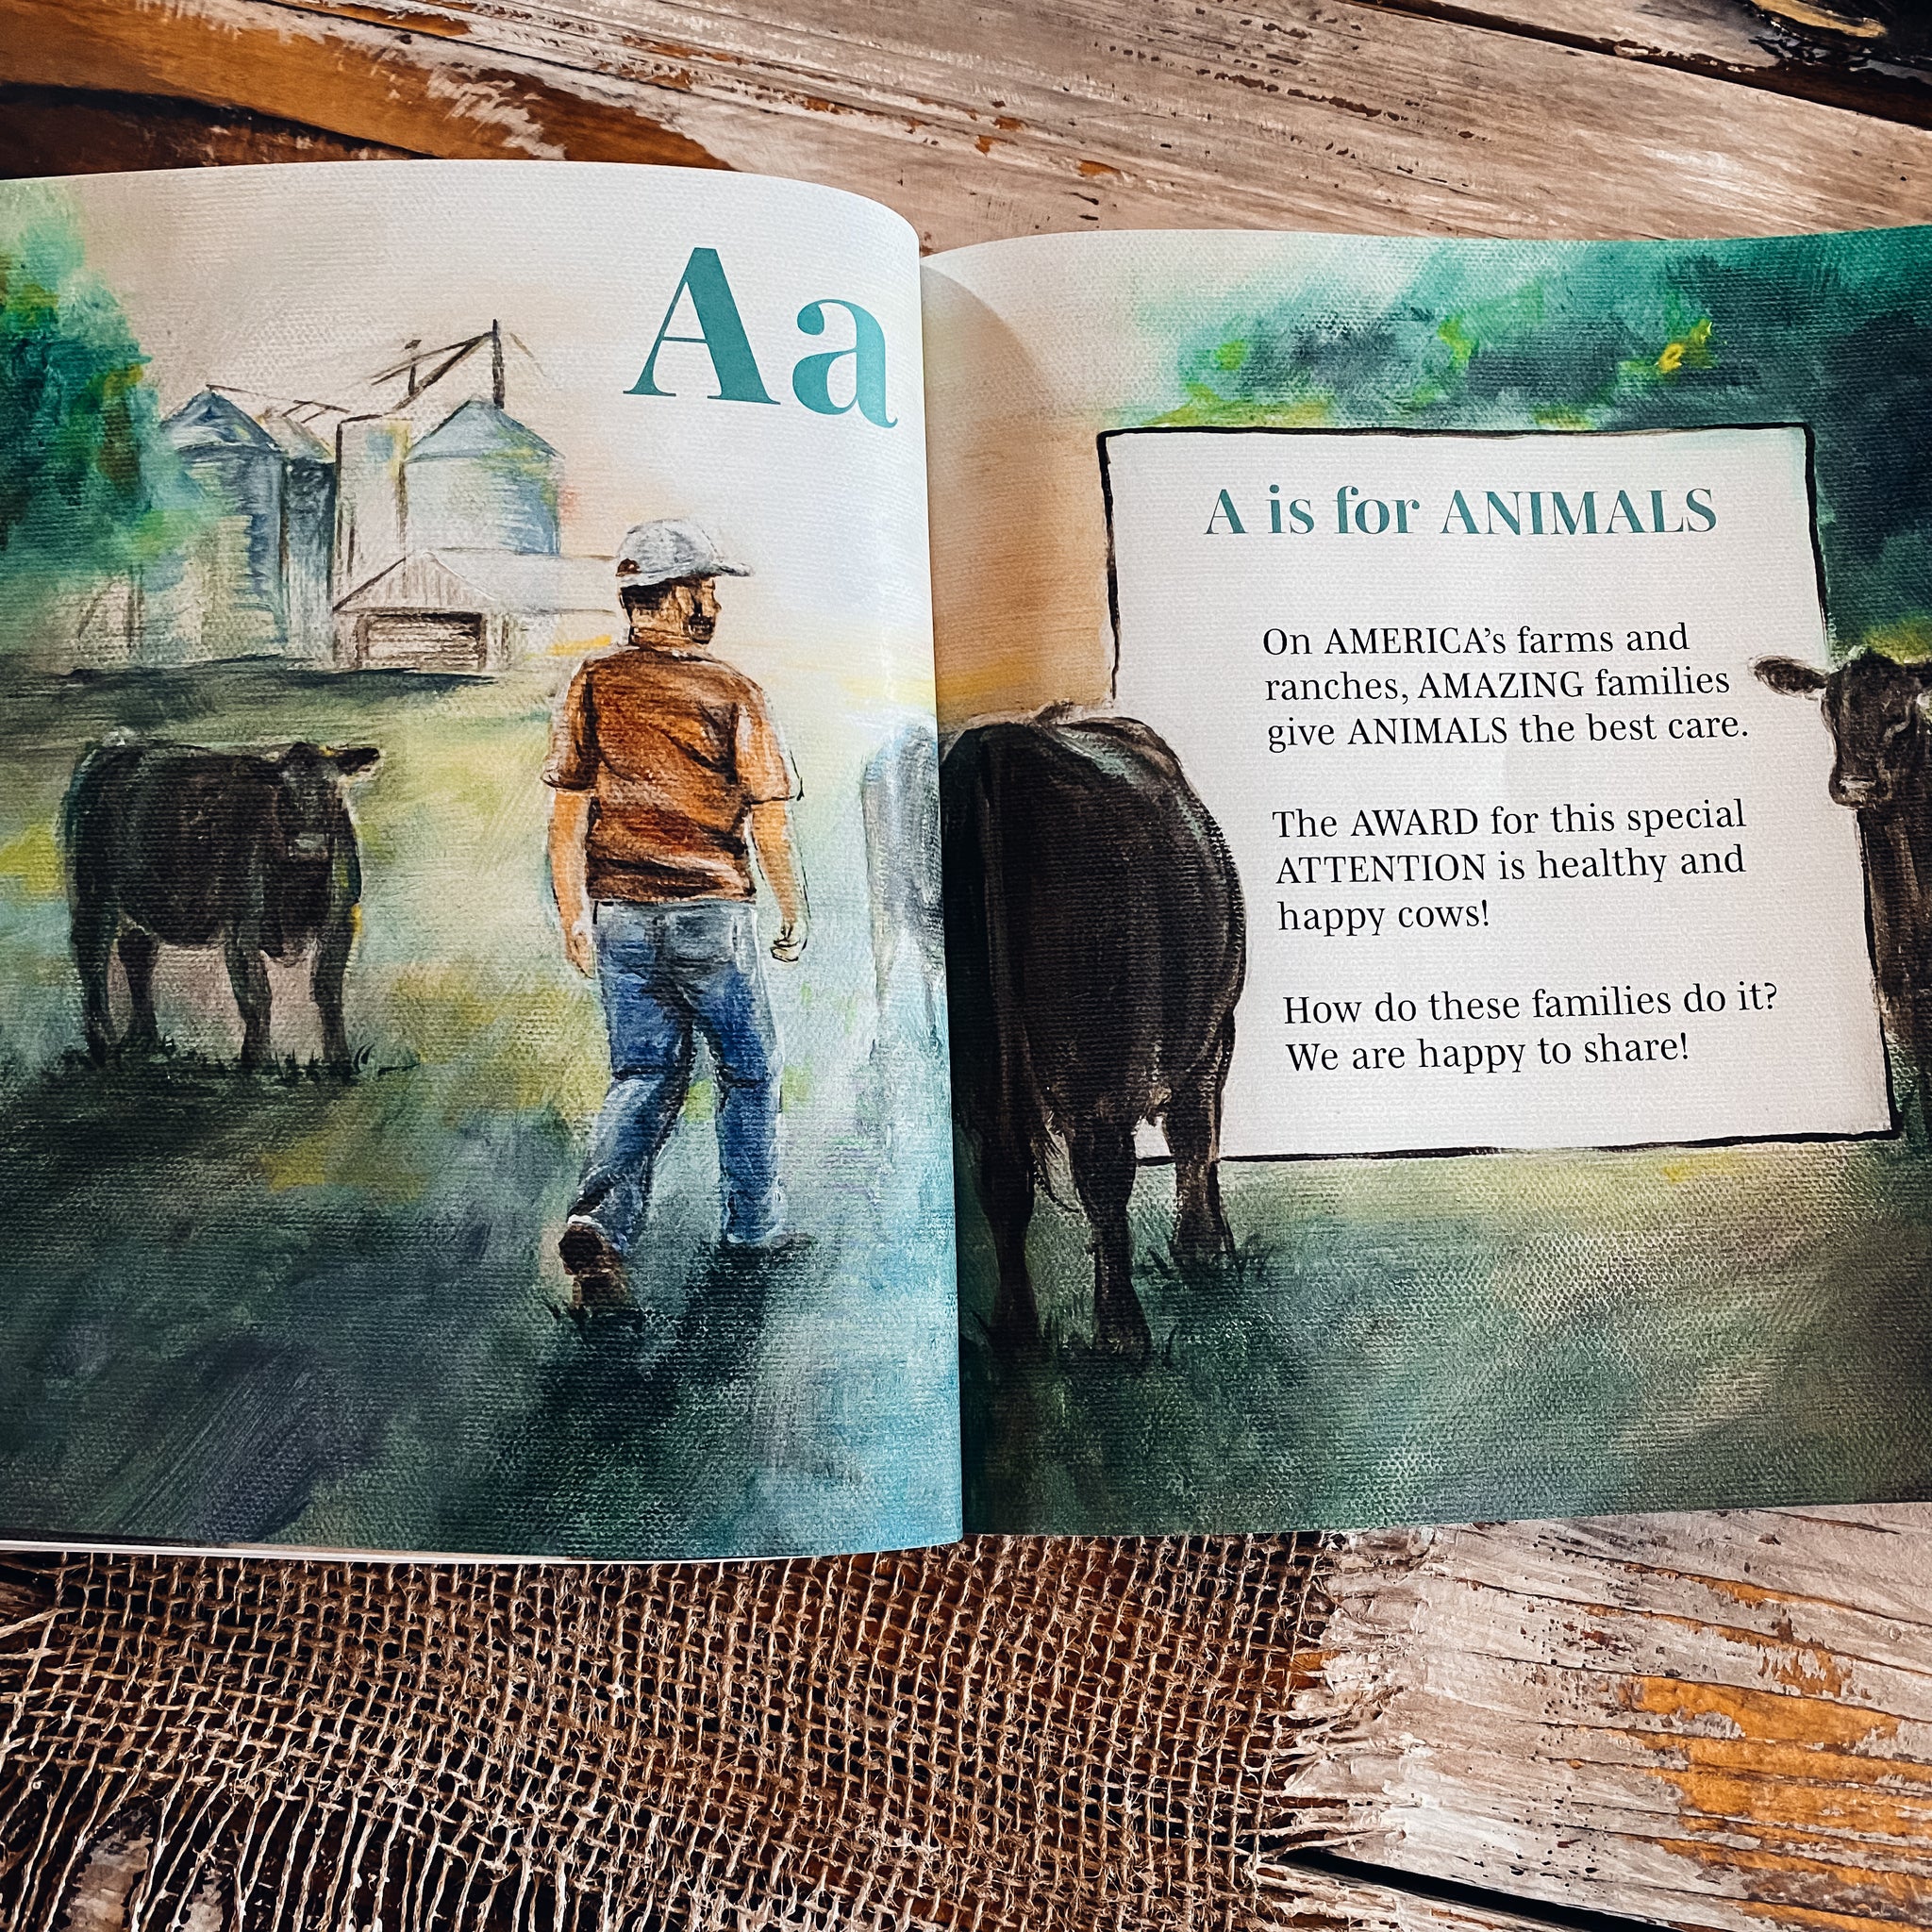 Book - Scratch and Draw Farm Animals – Amanda Radke